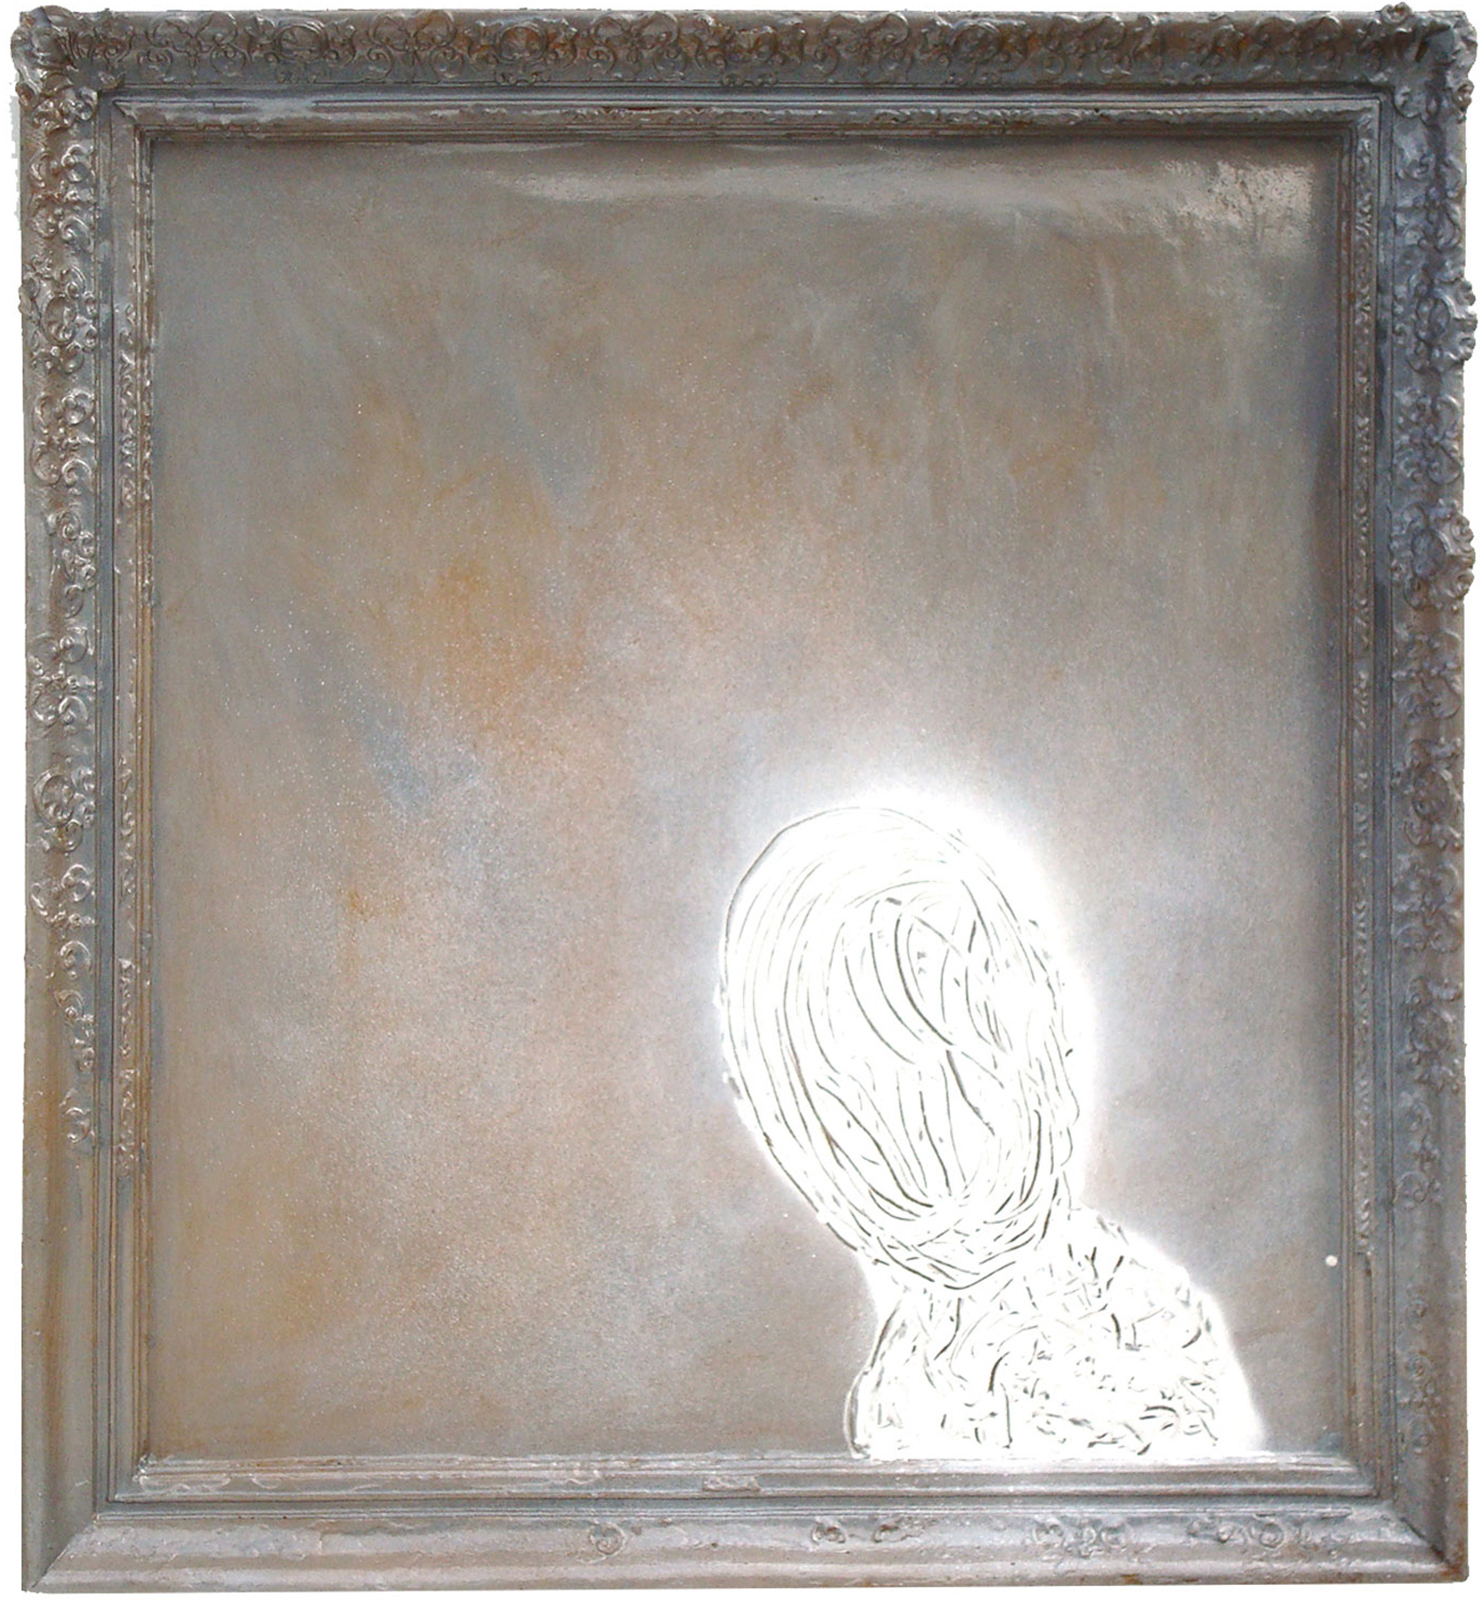 Serie ‘Retrats’, 2000-2008, resina de poliéster, 125 x 116 cm.